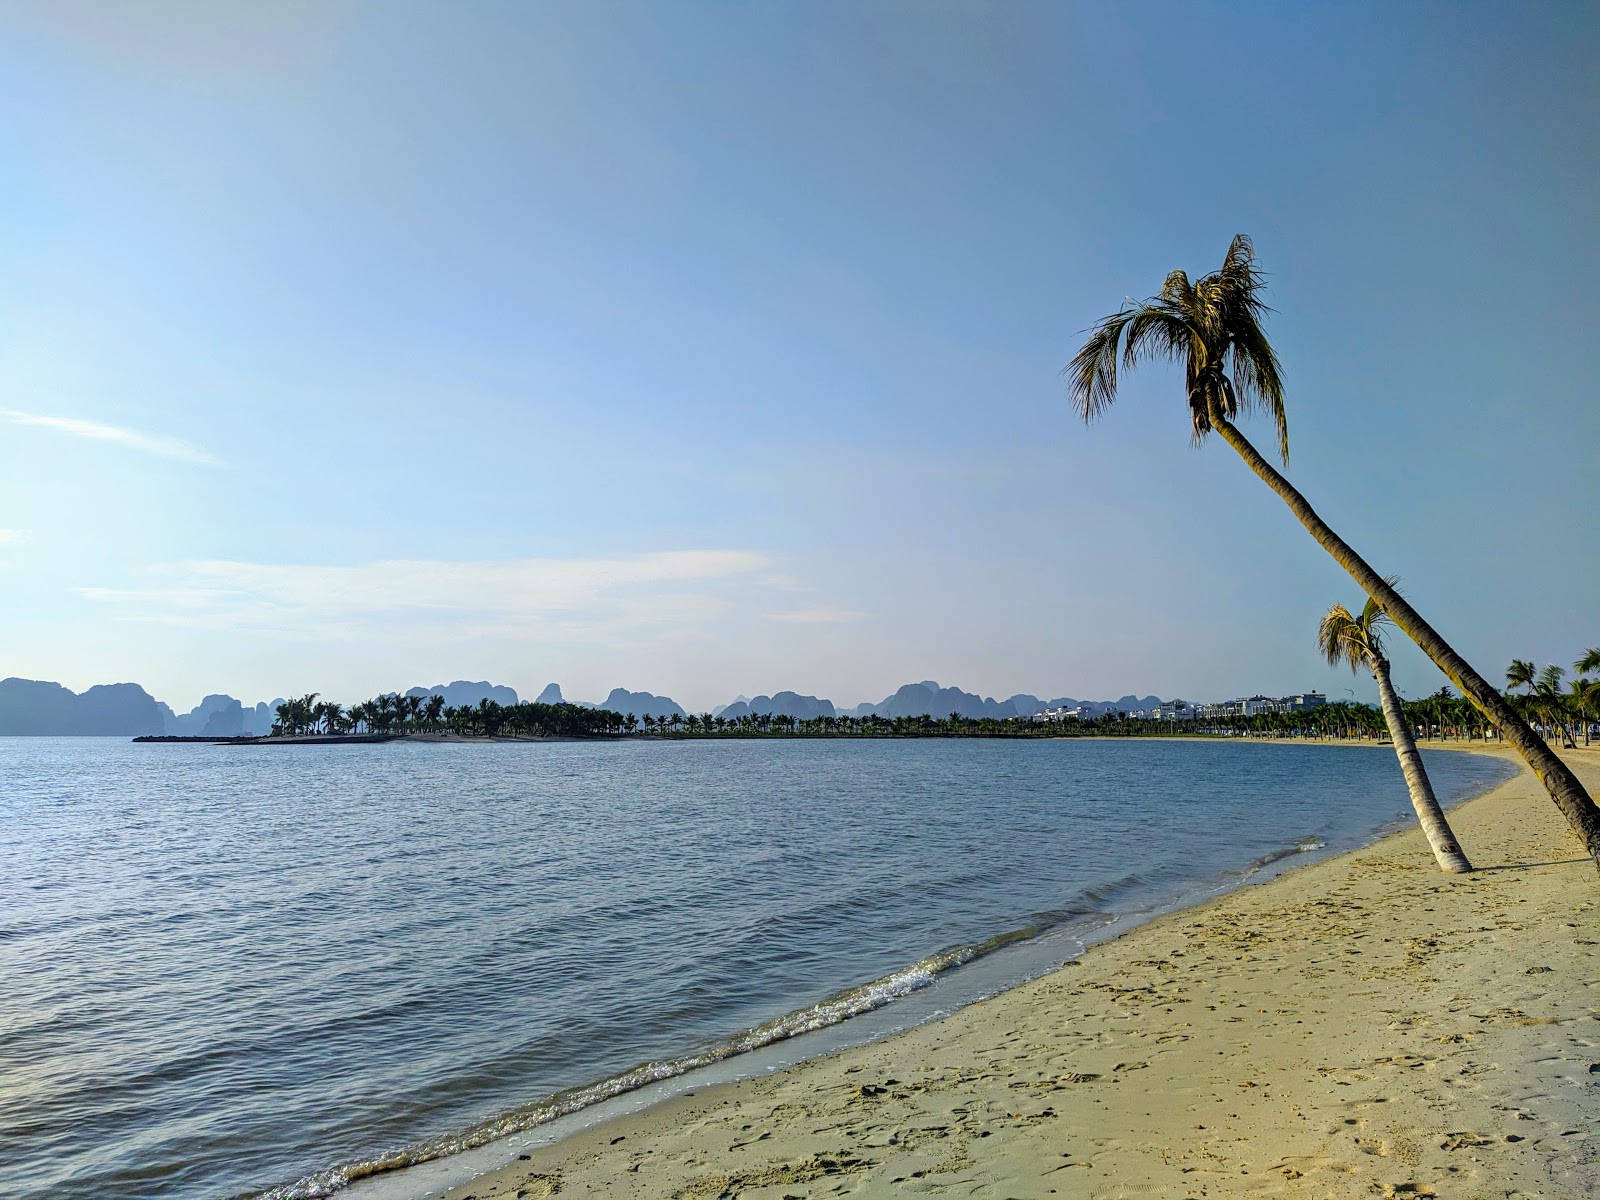 Tuan Chau Resort beach'in fotoğrafı parlak kum yüzey ile